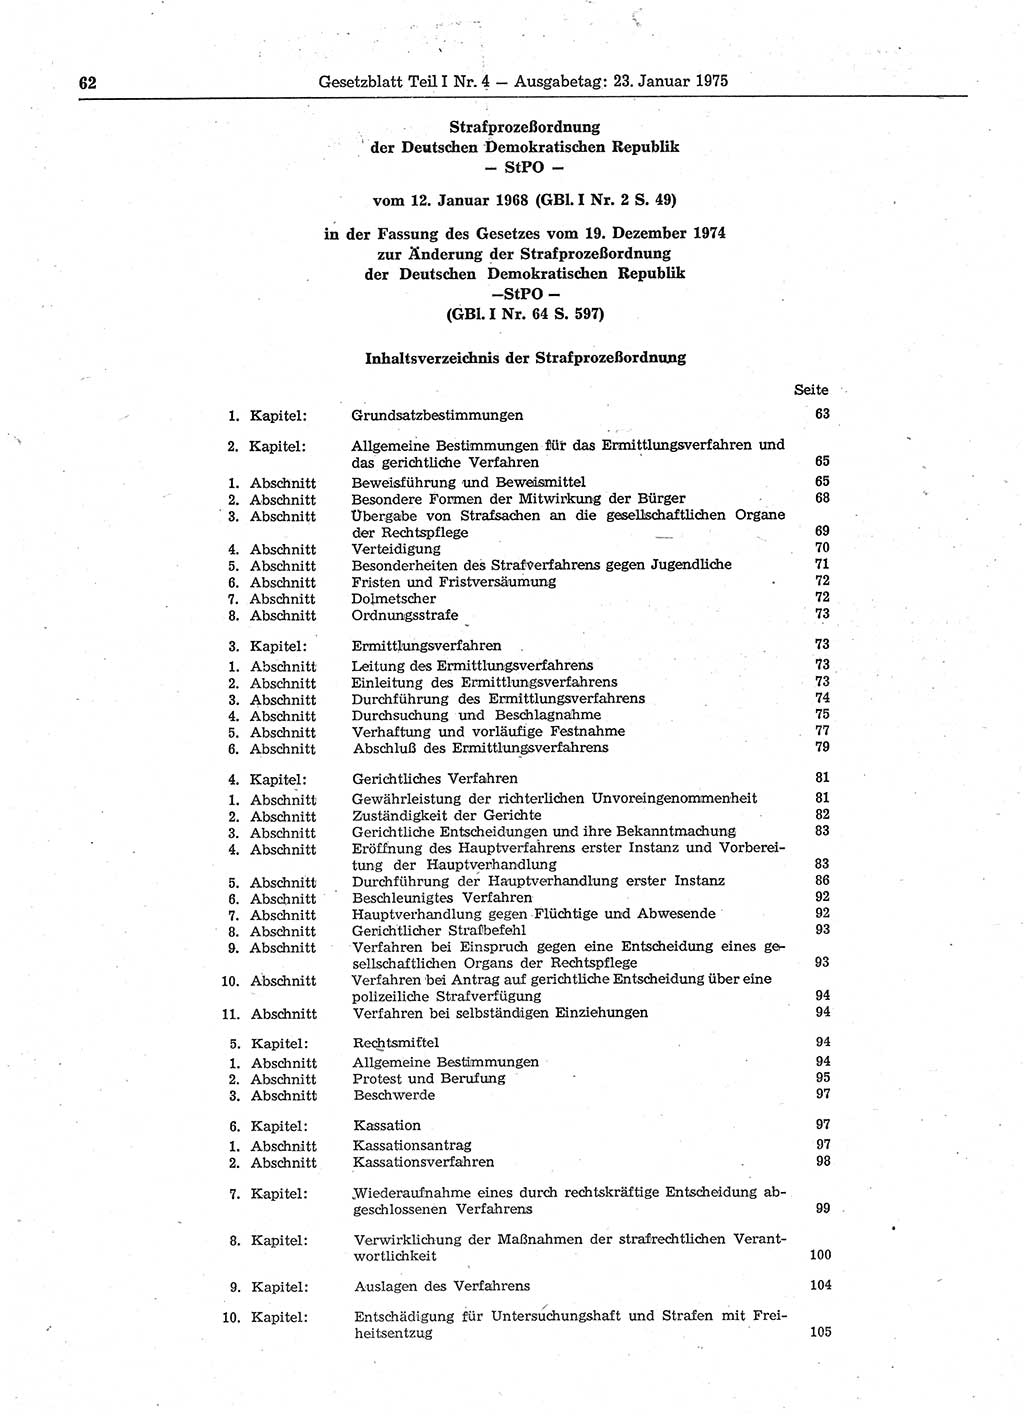 Gesetzblatt (GBl.) der Deutschen Demokratischen Republik (DDR) Teil Ⅰ 1975, Seite 62 (GBl. DDR Ⅰ 1975, S. 62)